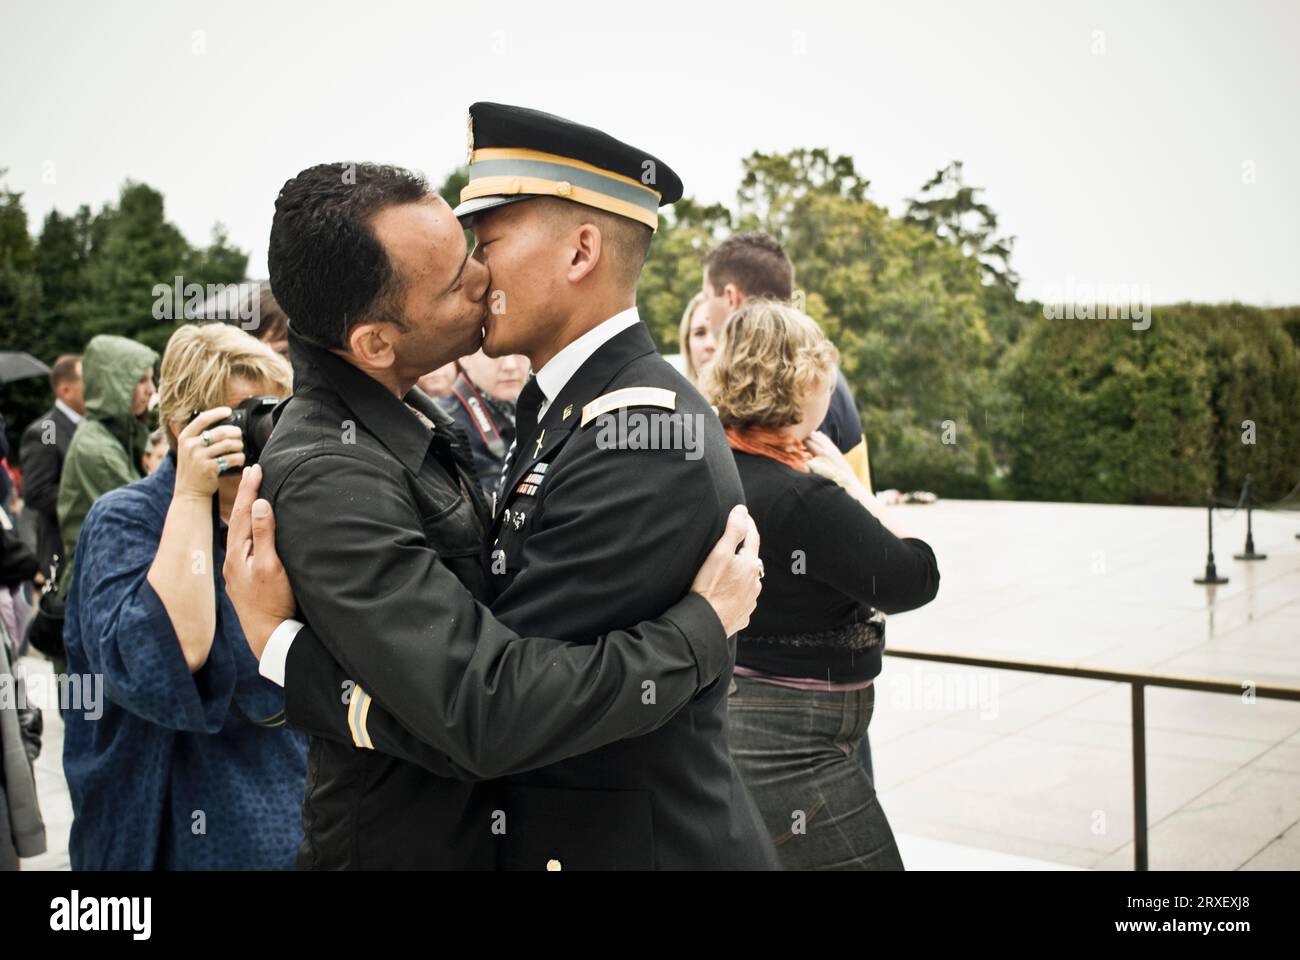 Un ex tenente dell'esercito che è stato dimesso dall'esercito dopo aver ammesso di essere gay sta combattendo per abrogare l'atto "non chiedere... non dire". Egli è con l'organizzazione, 'Cavalieri Foto Stock